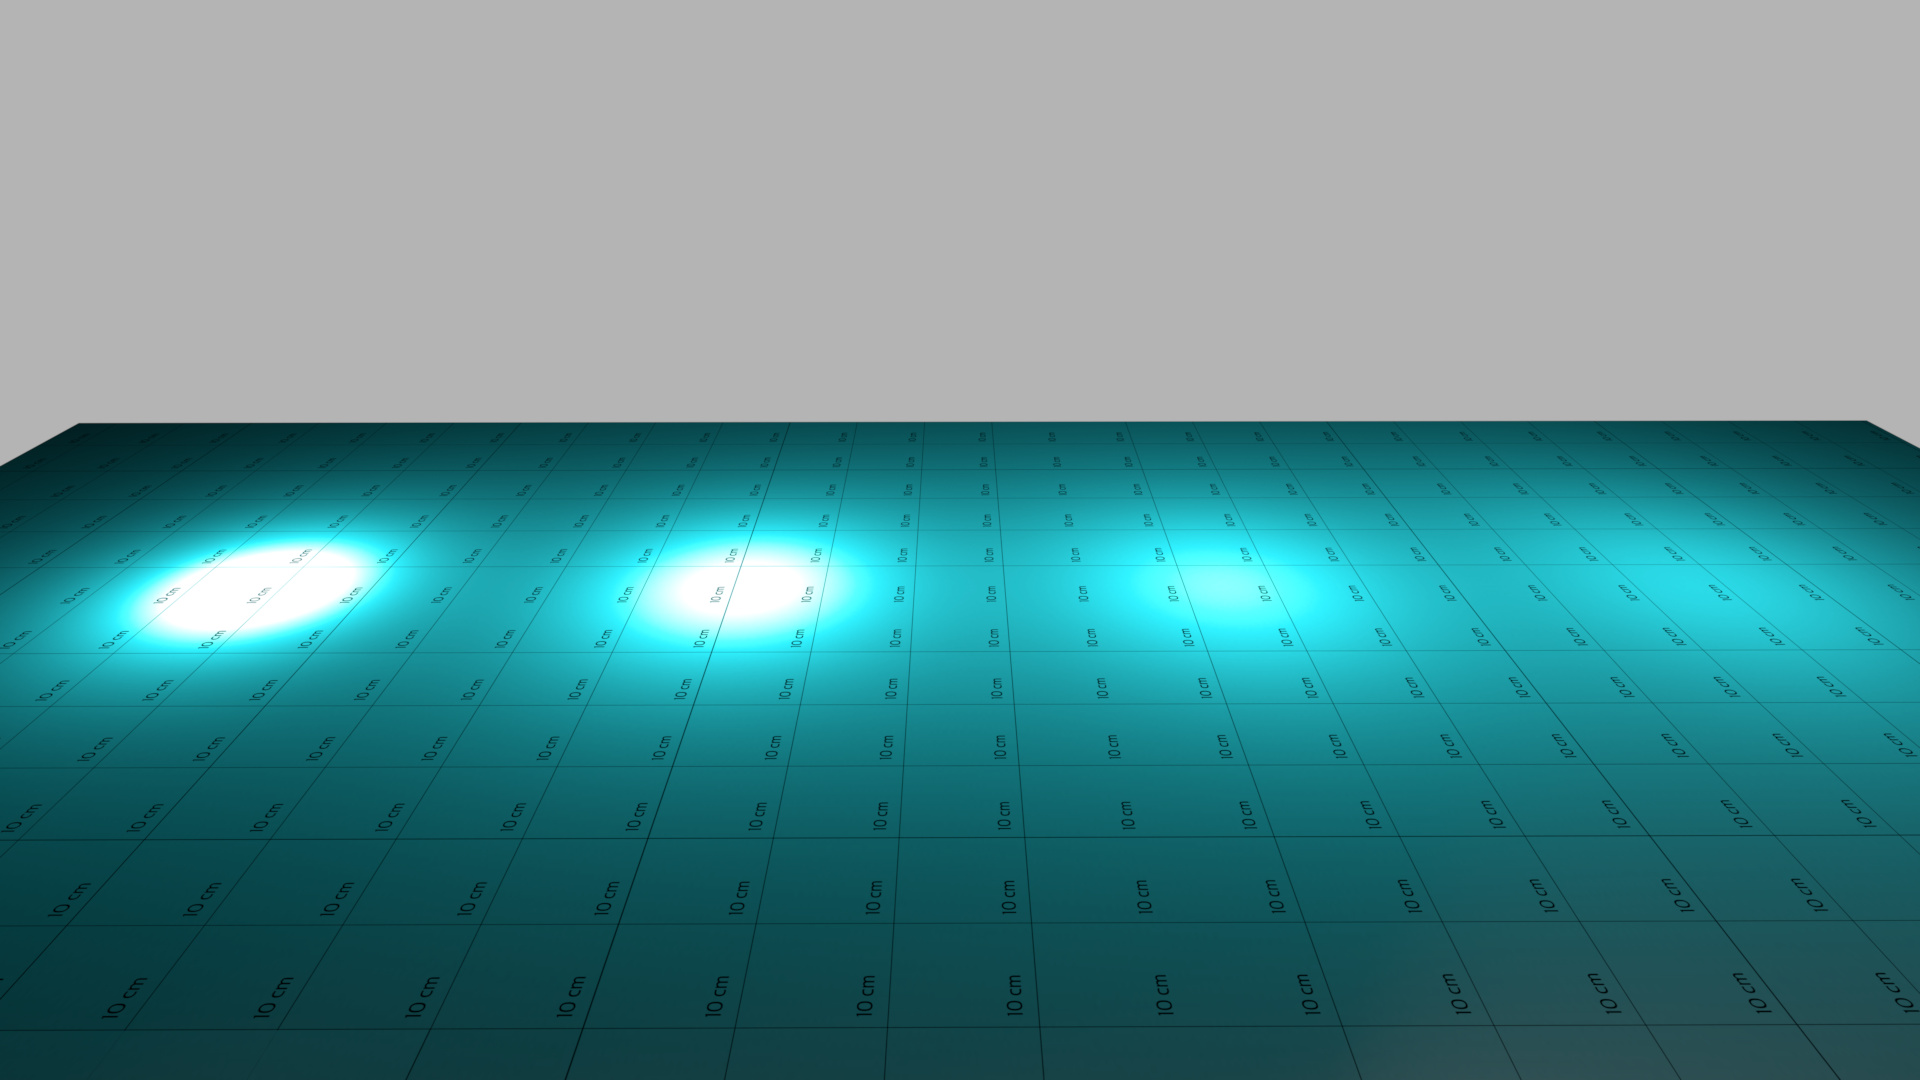 OpenGL illumination with intensity 1